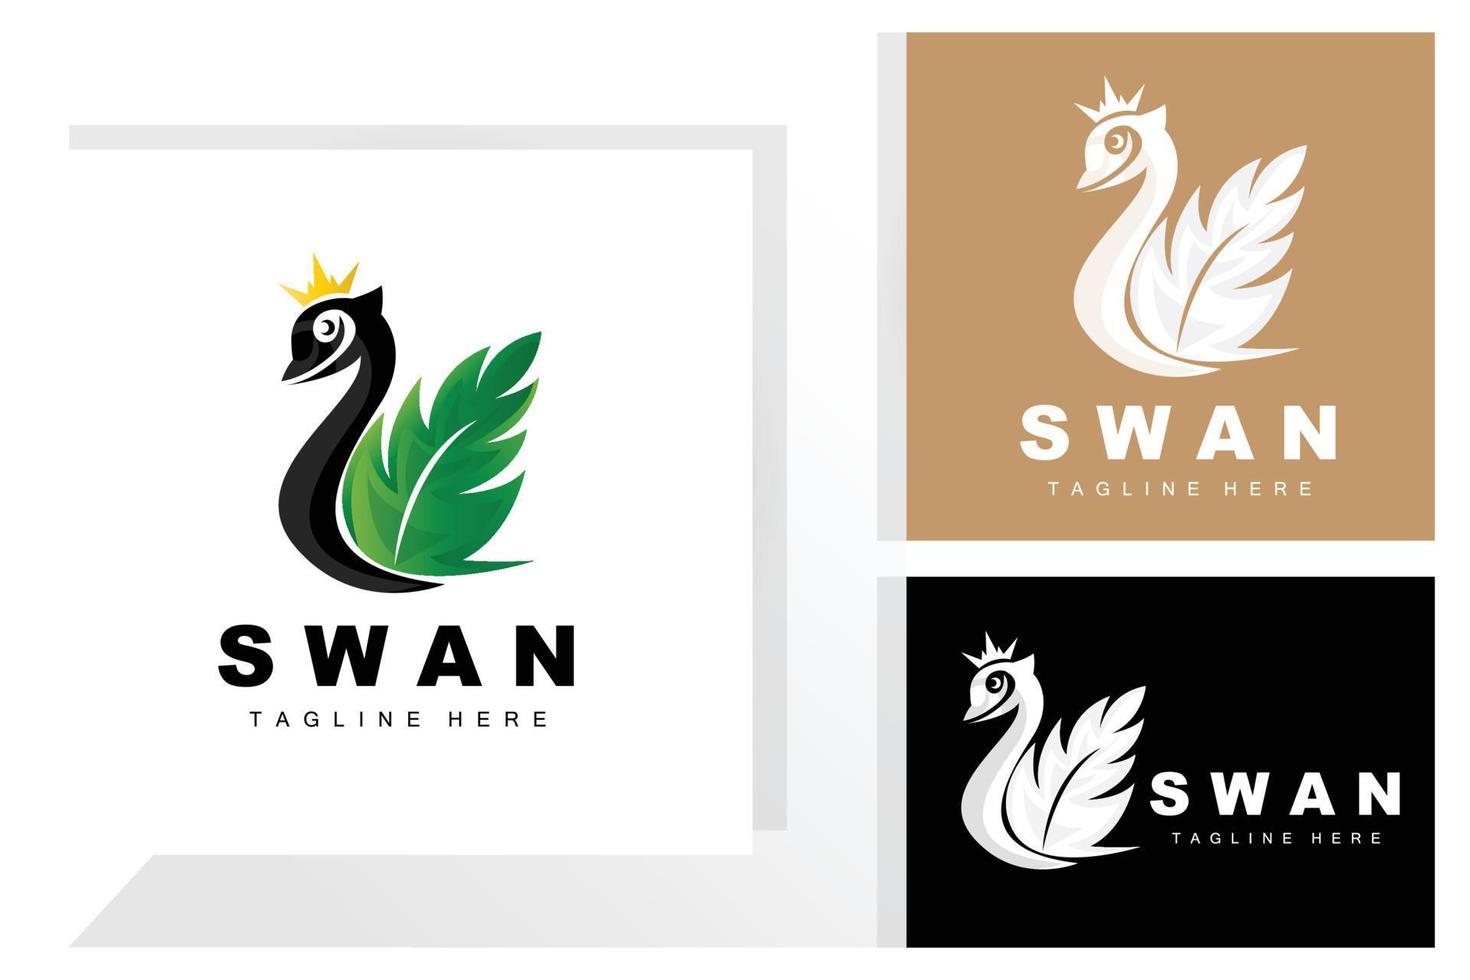 diseño de logotipo de cisne, ilustración de animales de pato, vector de plantilla de marca de empresa